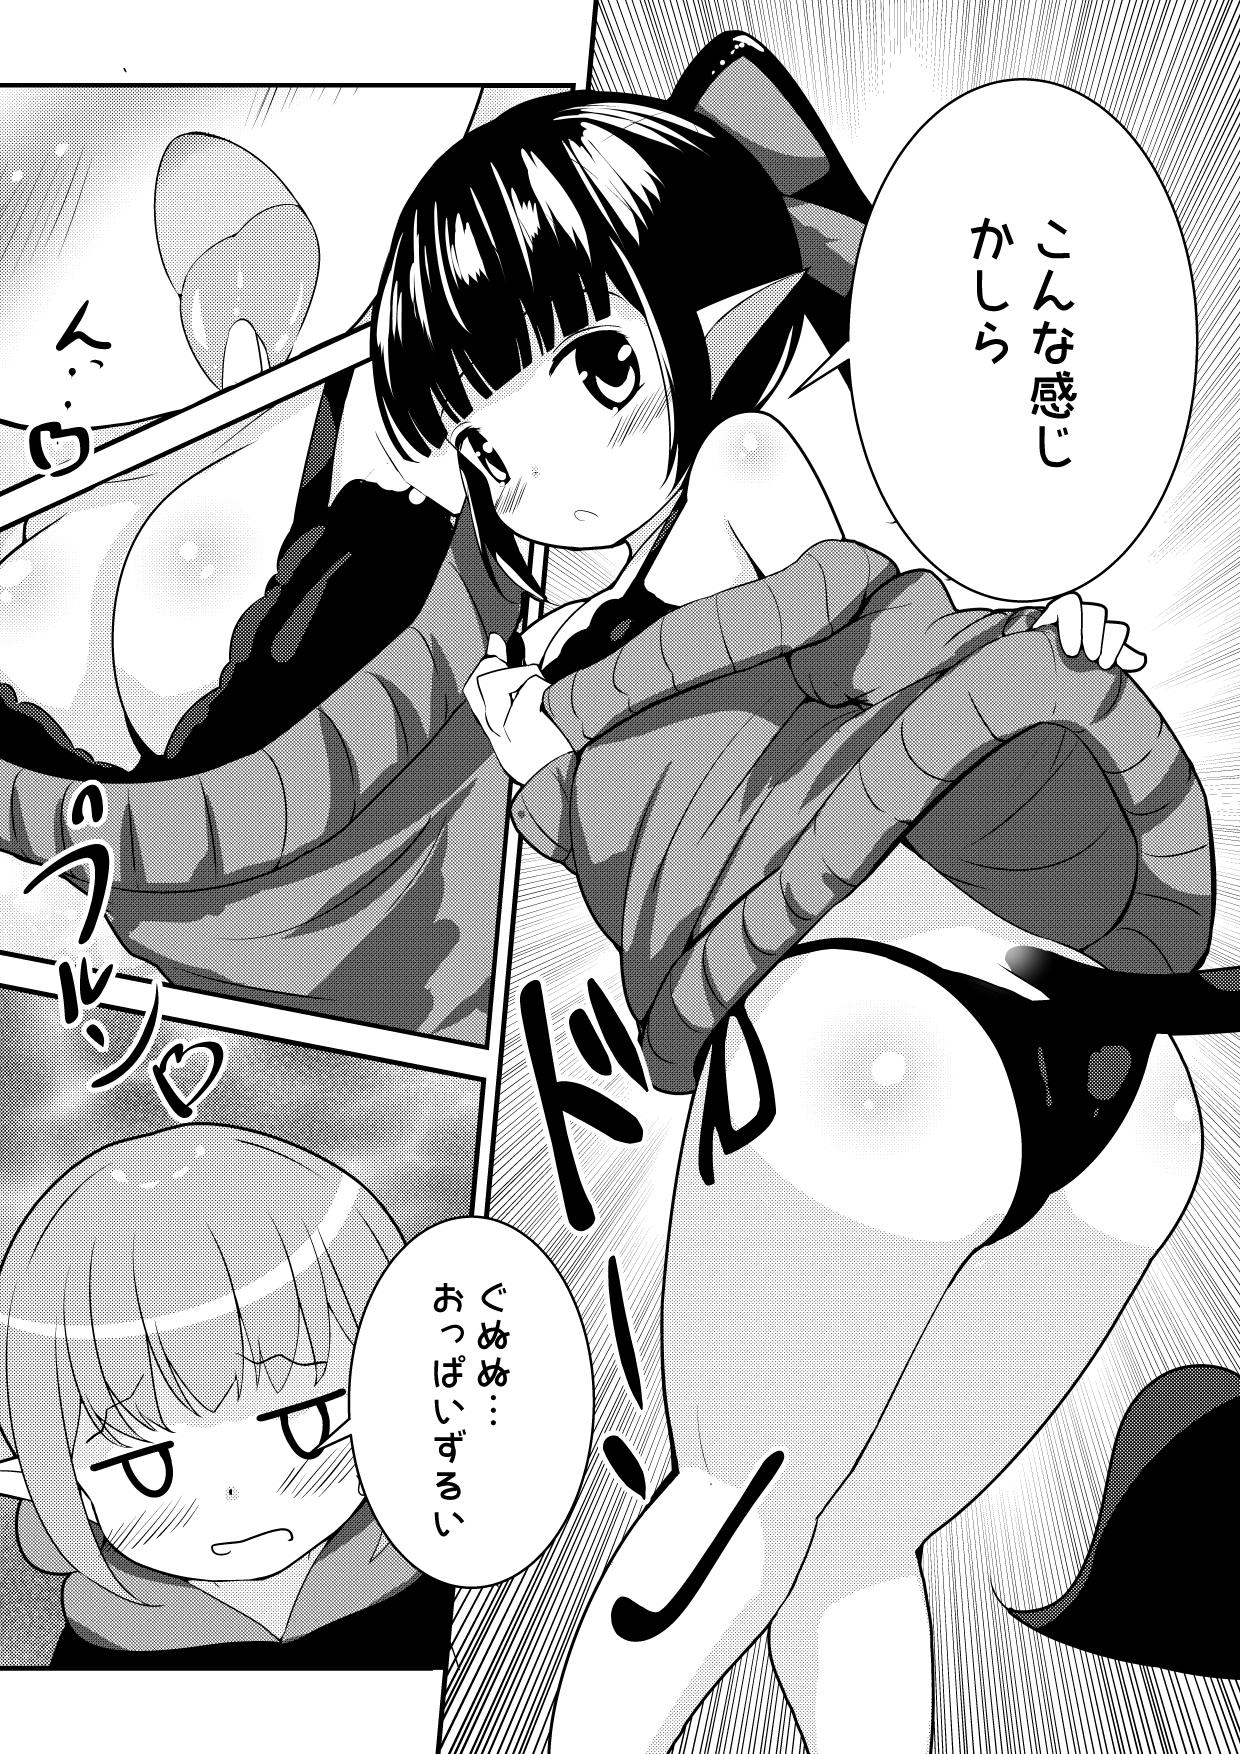 [Motiyuki] Ecchi na Koto ga Nigate na Loli Succubus-chan Manga 1-3 1